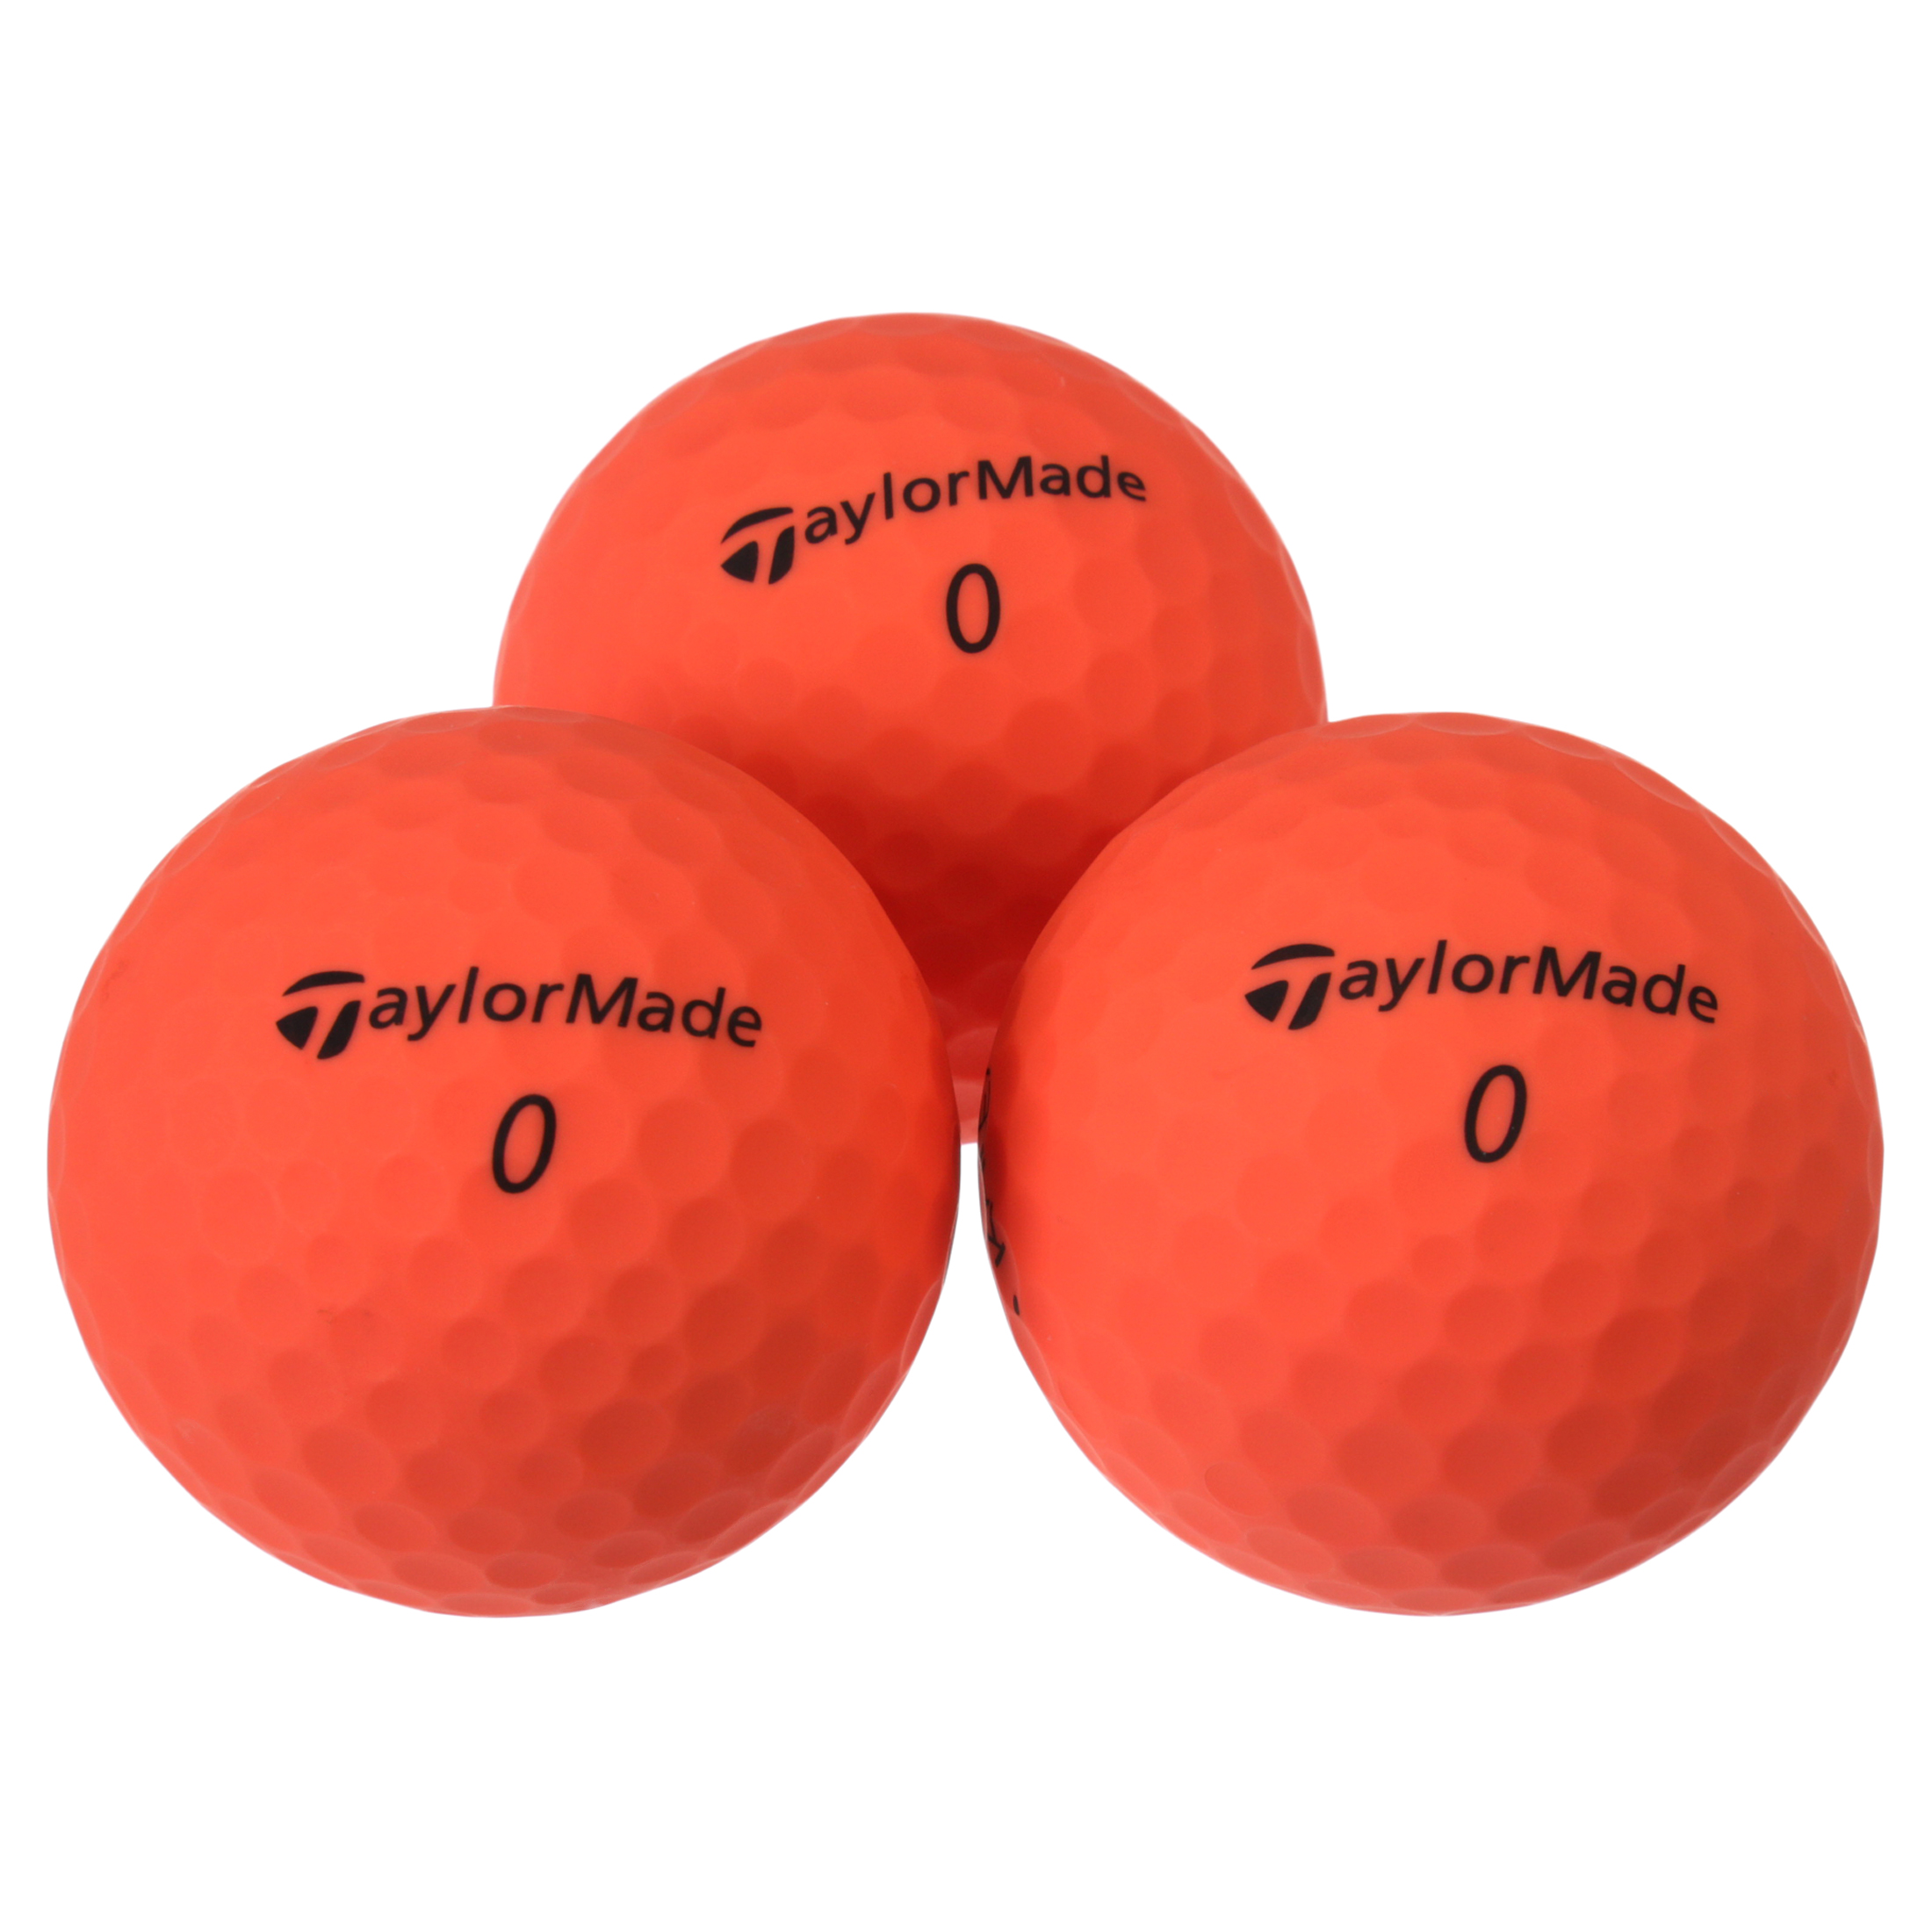 TaylorMade Women's 2019 Kalea Matte Peach Golf Balls, 12 Pack - image 2 of 9